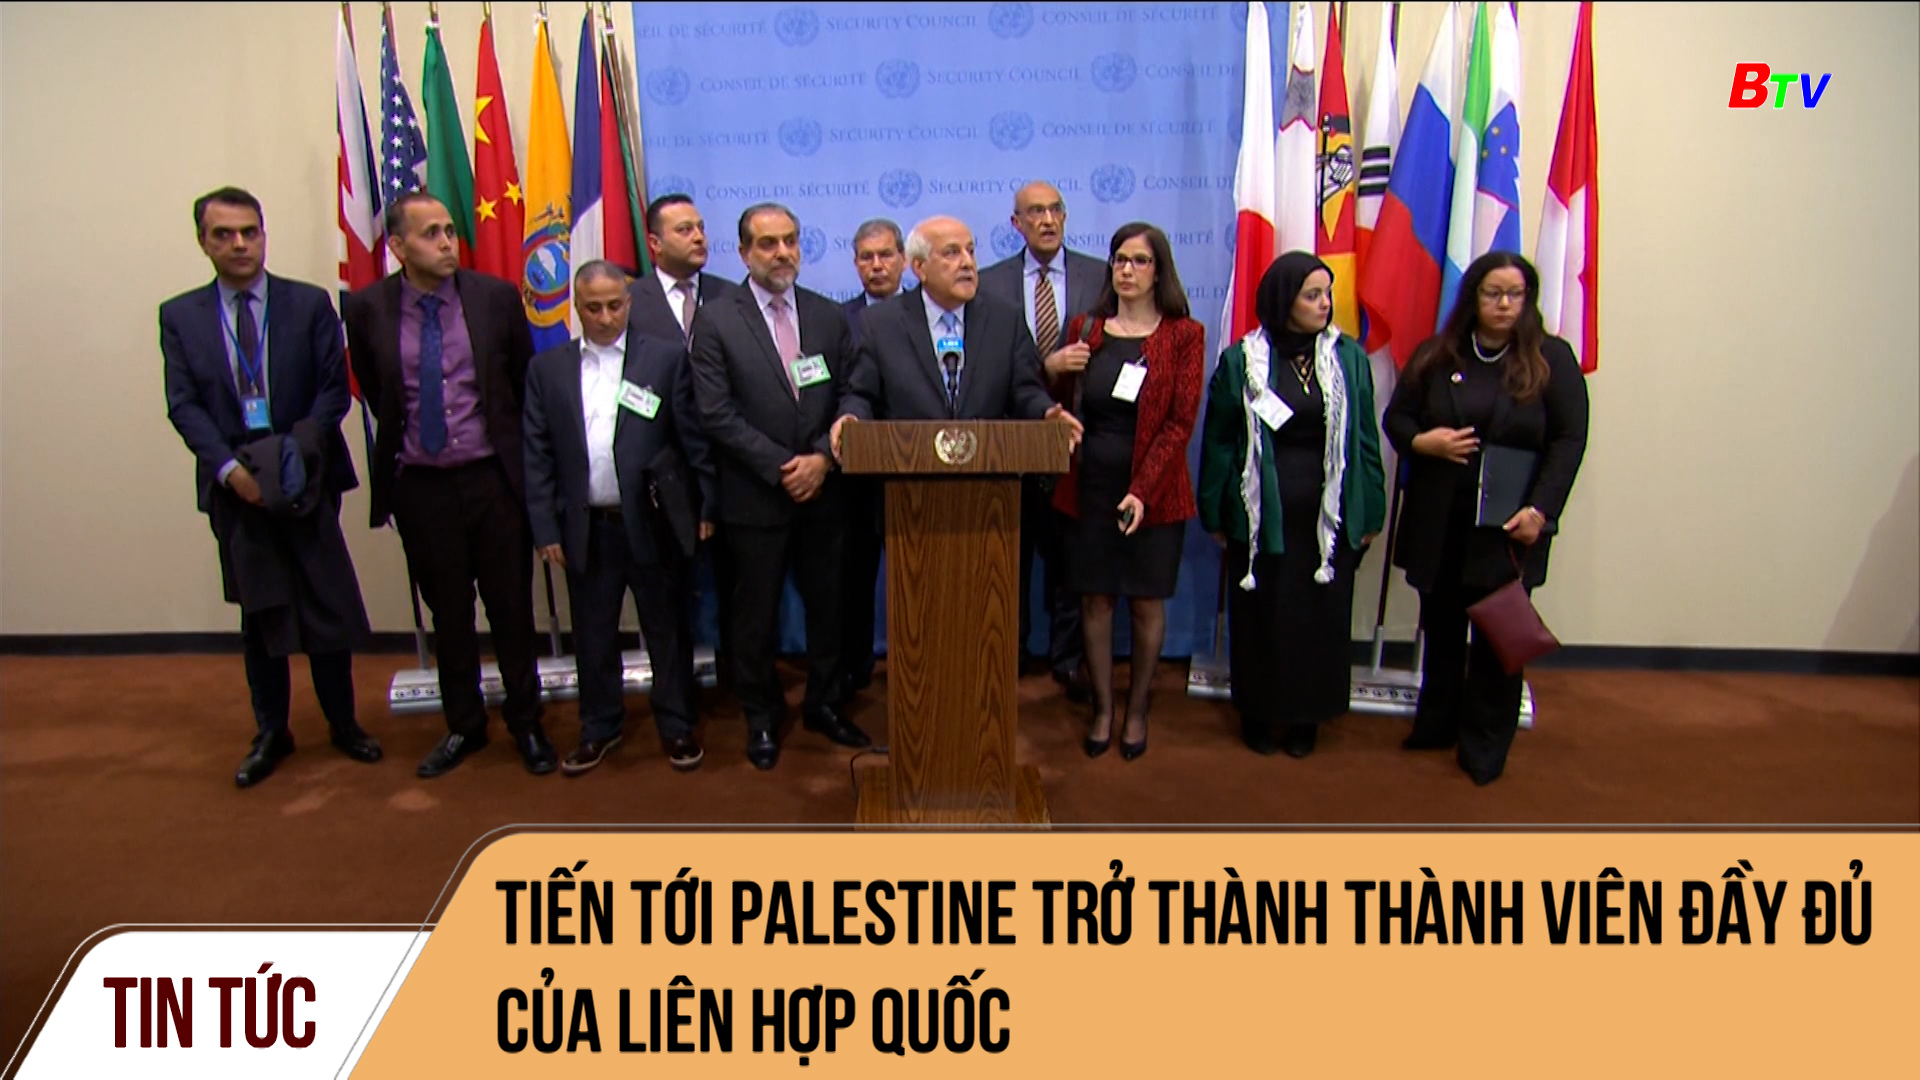 Tiến tới Palestine trở thành thành viên đầy đủ của LHQ